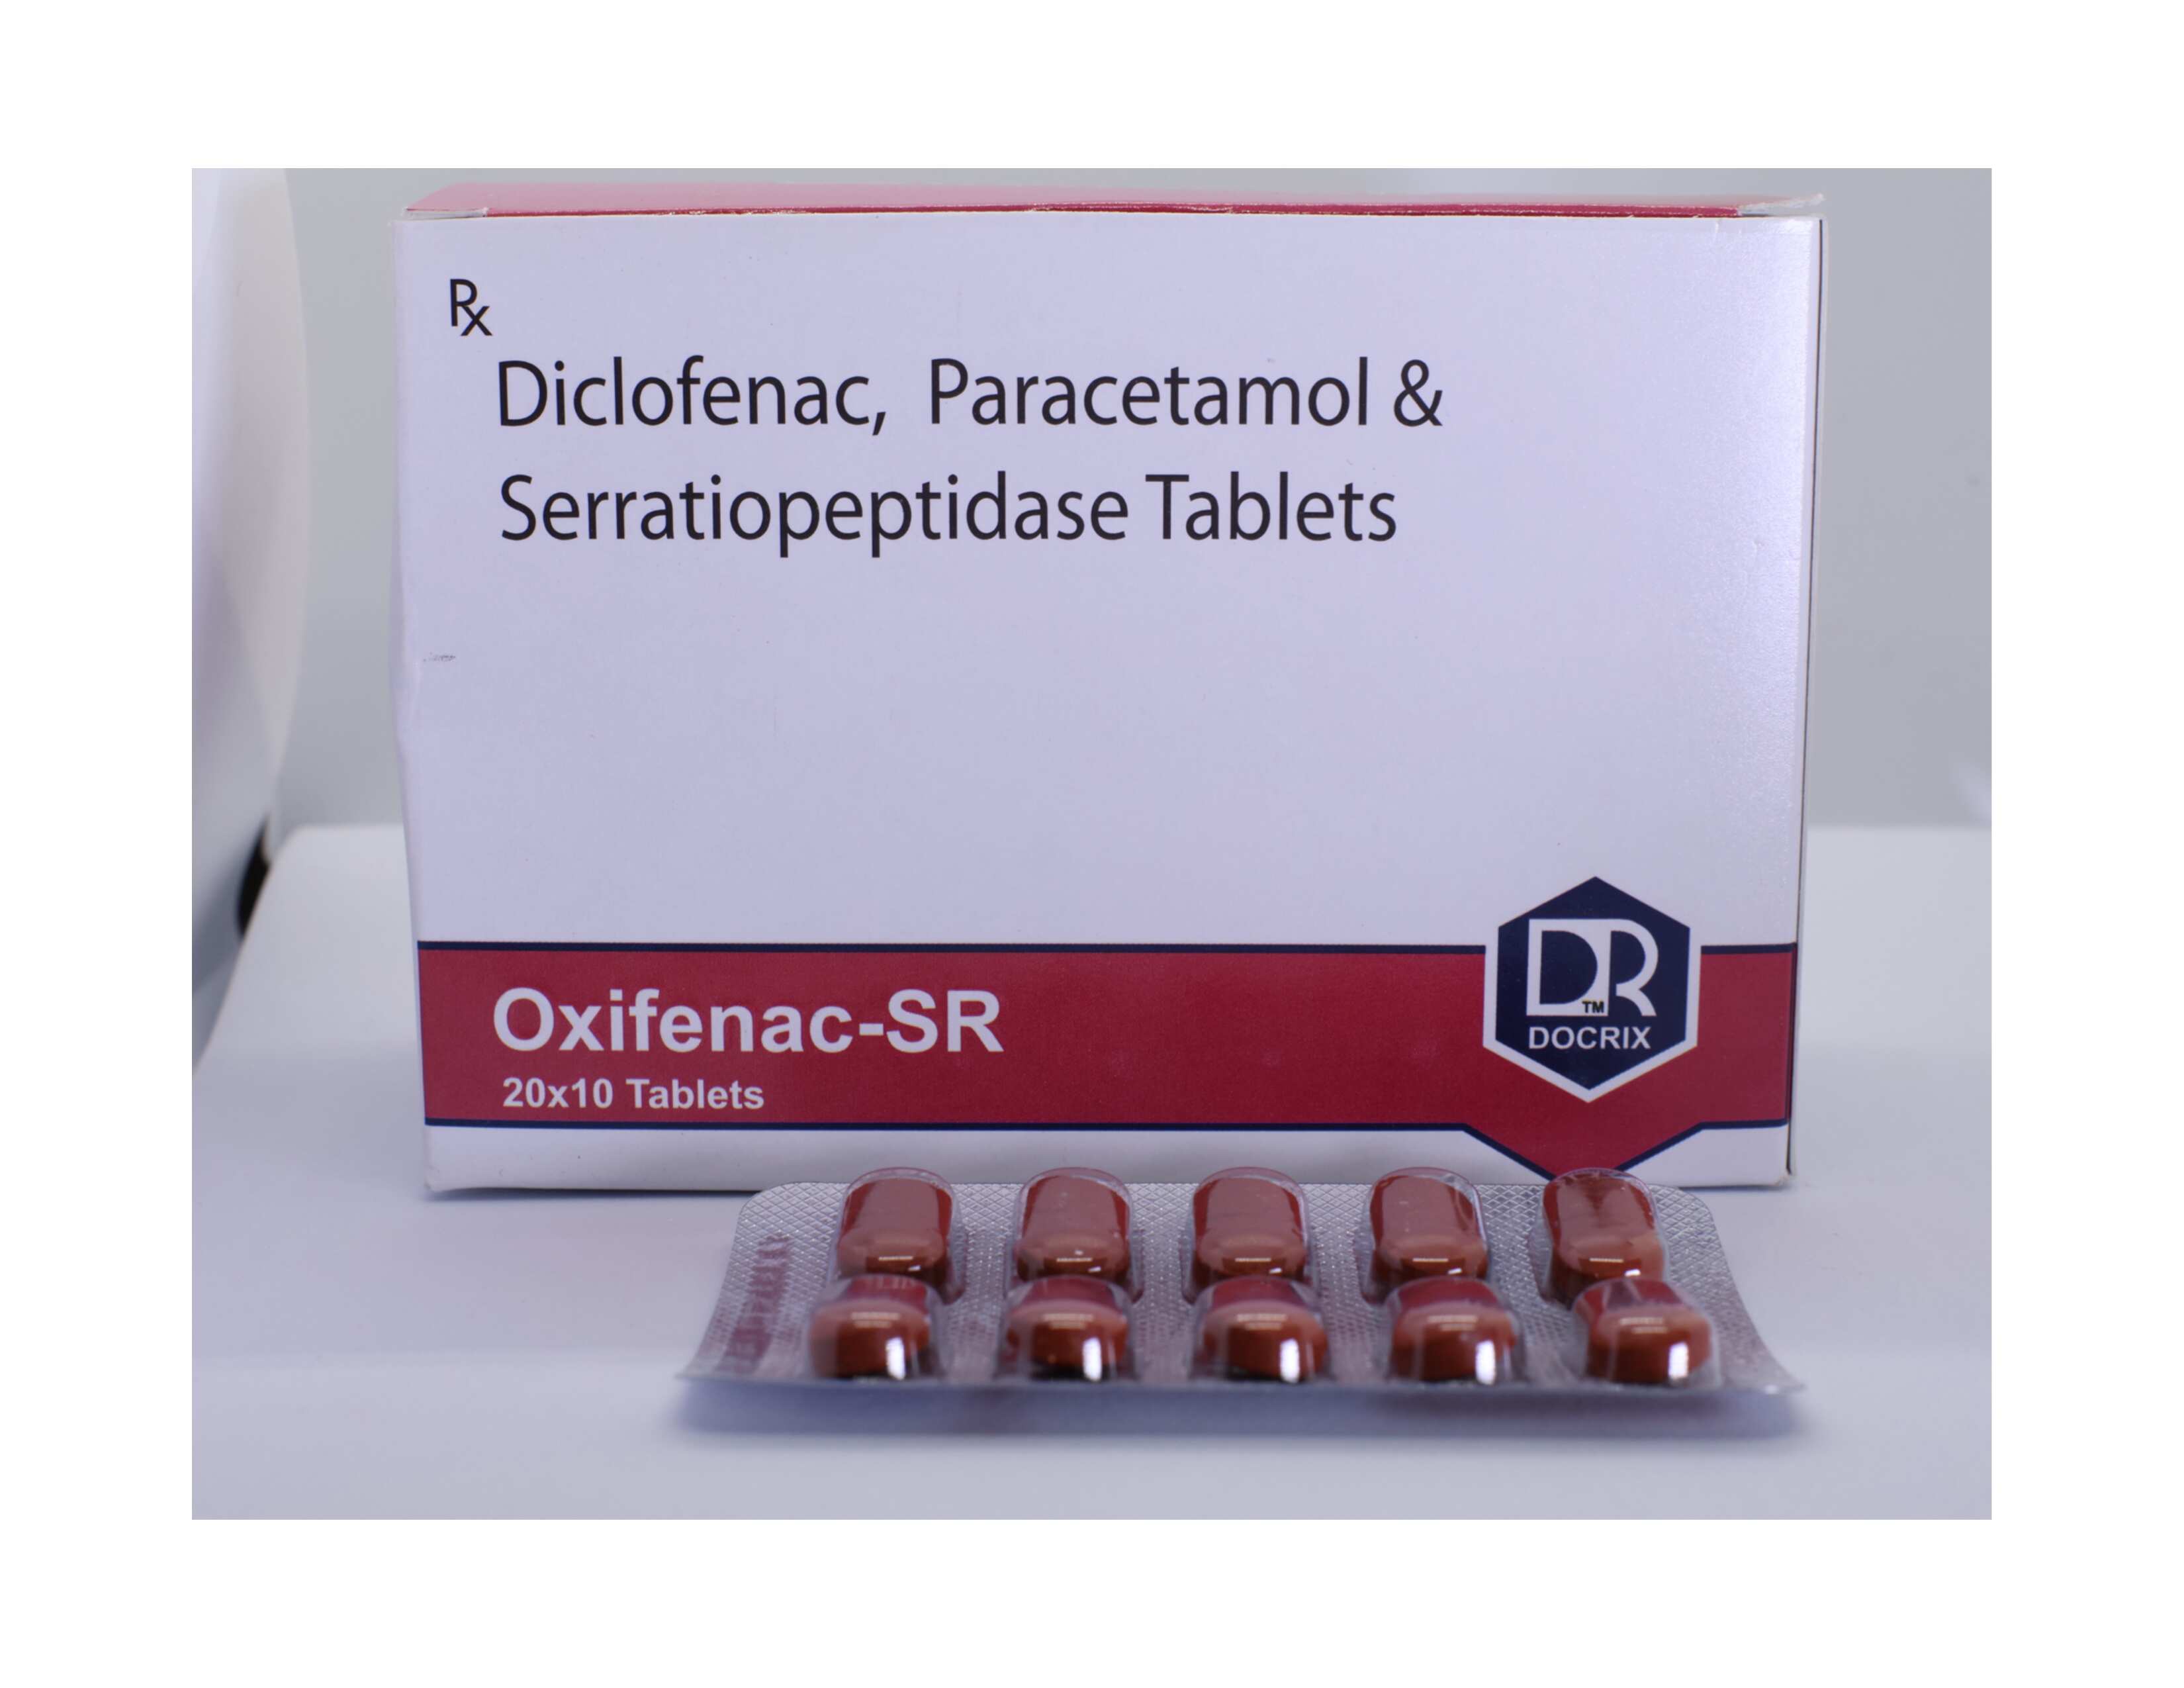 Product Name:  Oxifenac SR , Compositions of  Oxifenac SR  are Diclofenac, Paracetamol & Serratiopeptidase Tablets - Docrix Healthcare